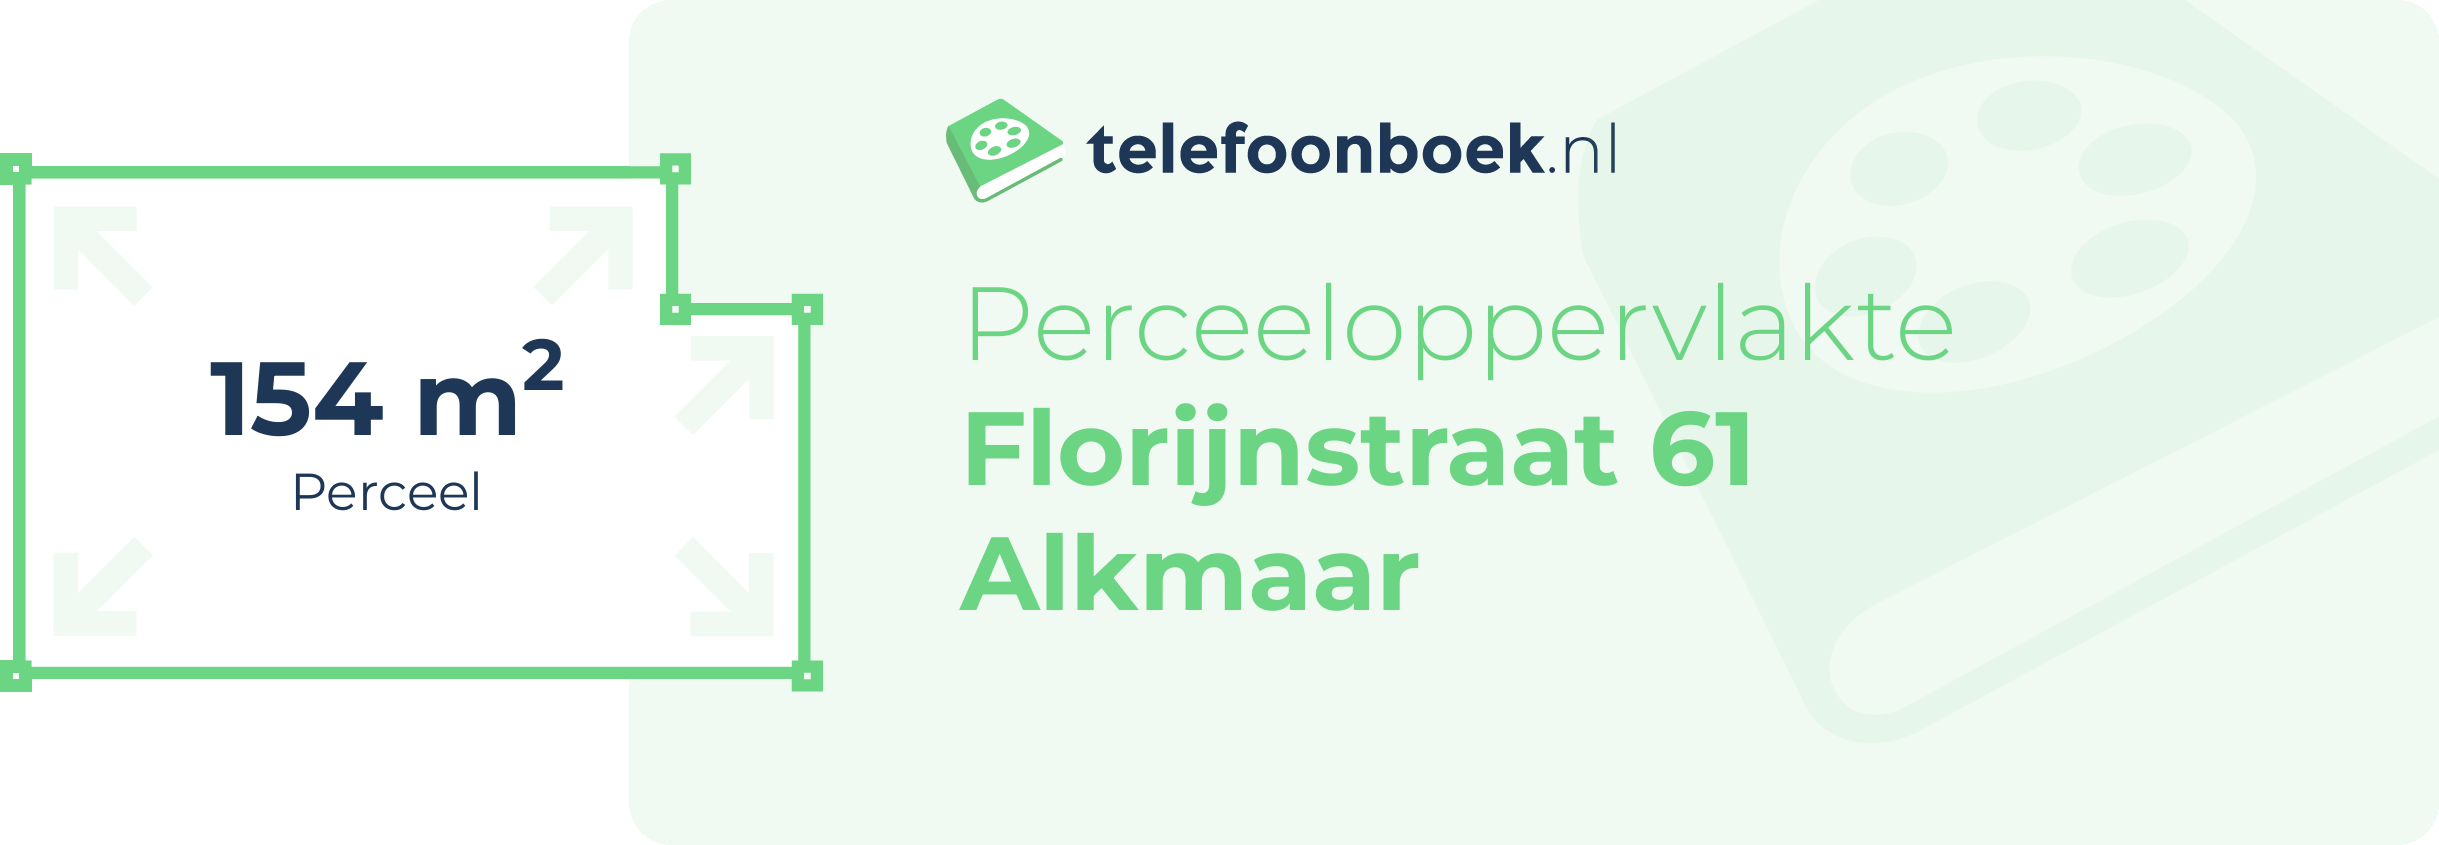 Perceeloppervlakte Florijnstraat 61 Alkmaar